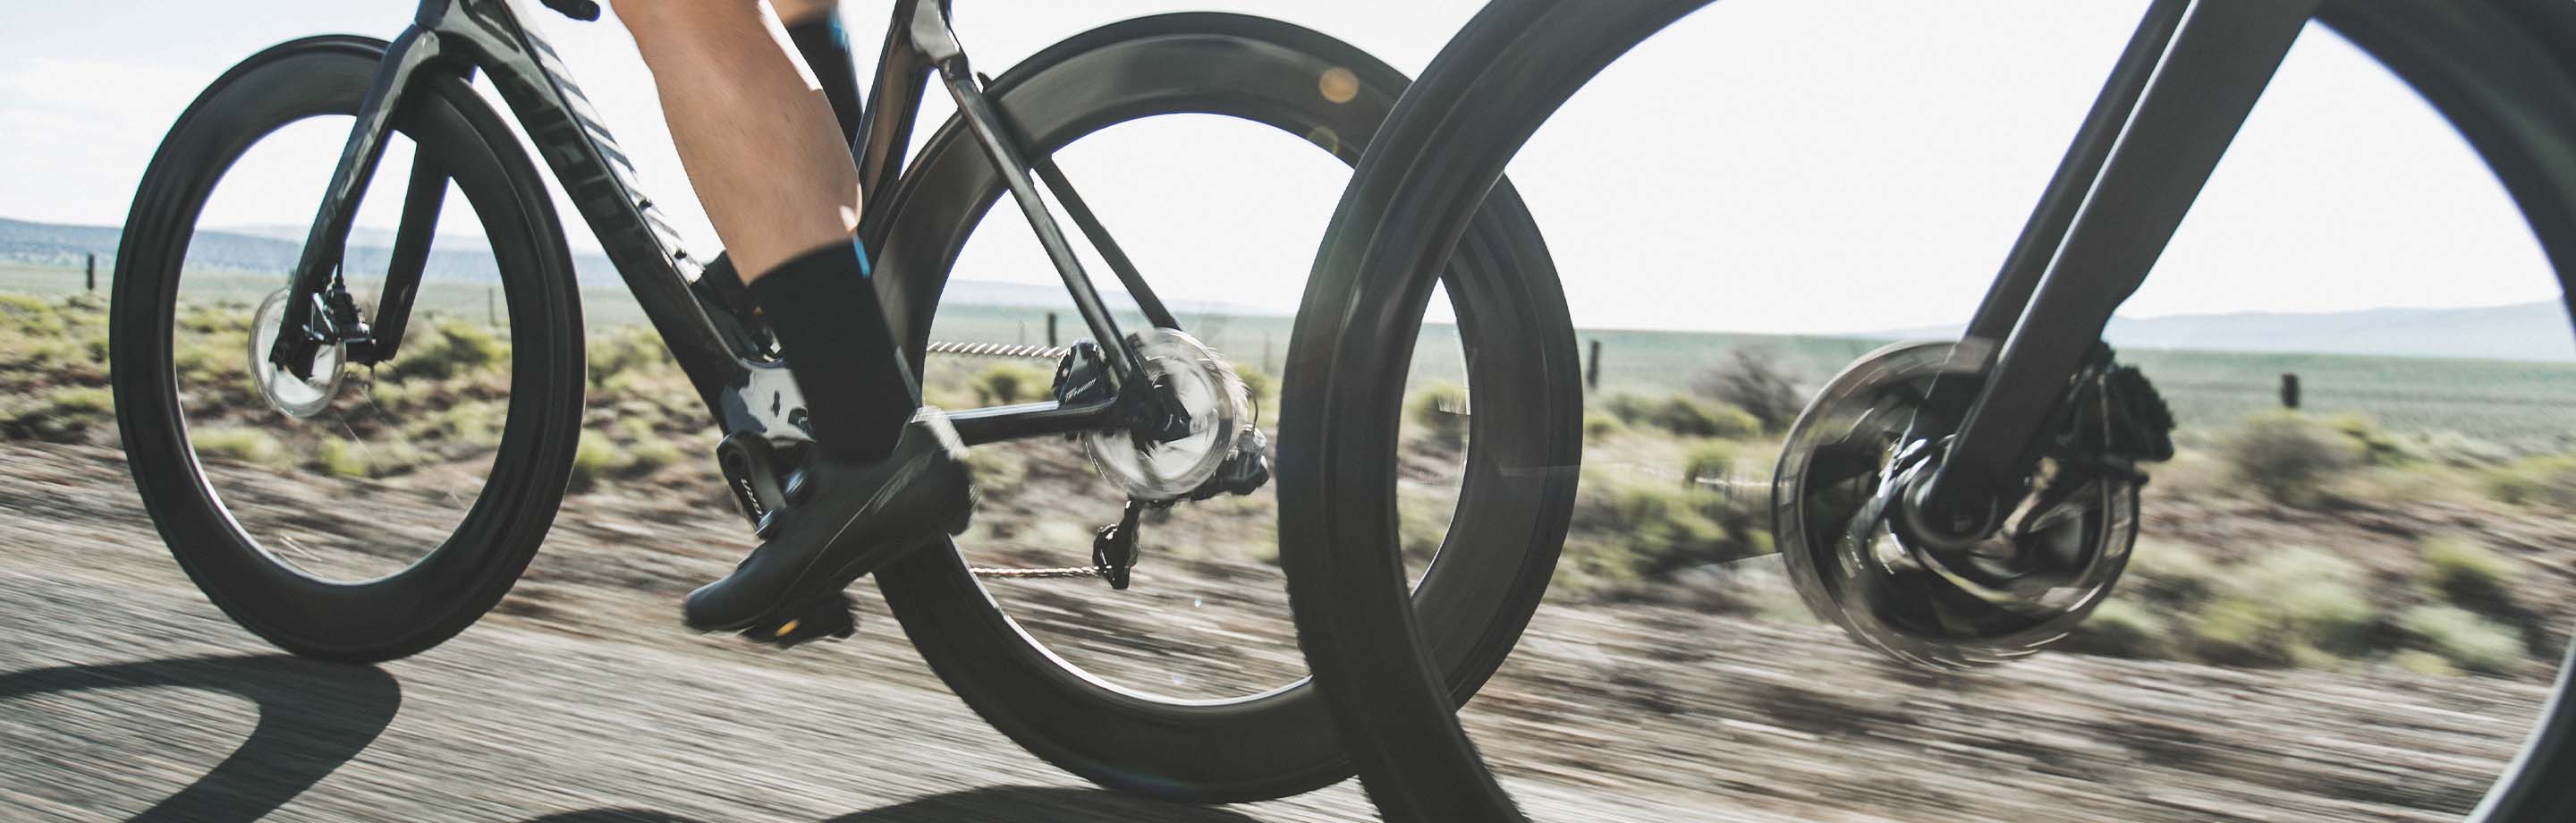 CADEX Laufräder für herausragende Performance an deinem Bike